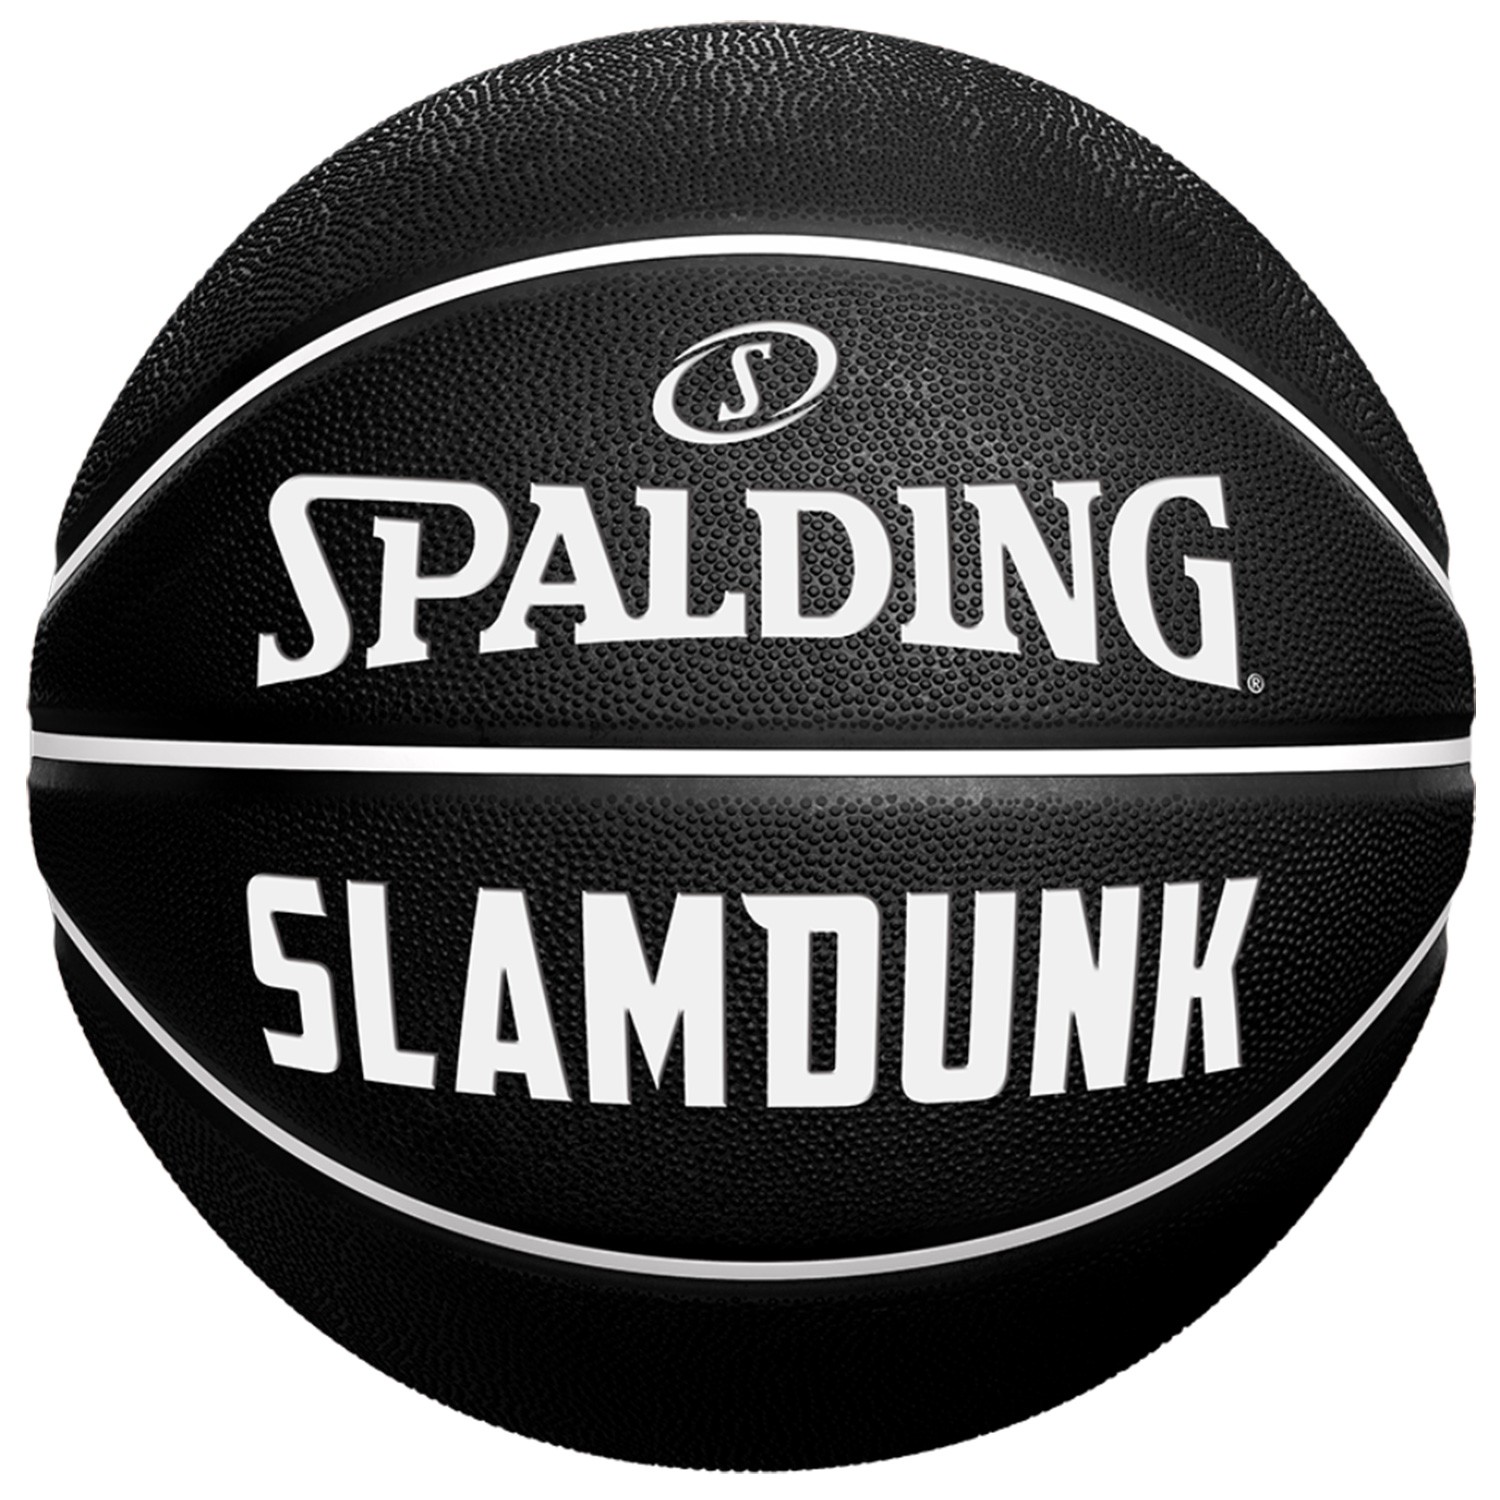 Manomètre ballon Spalding